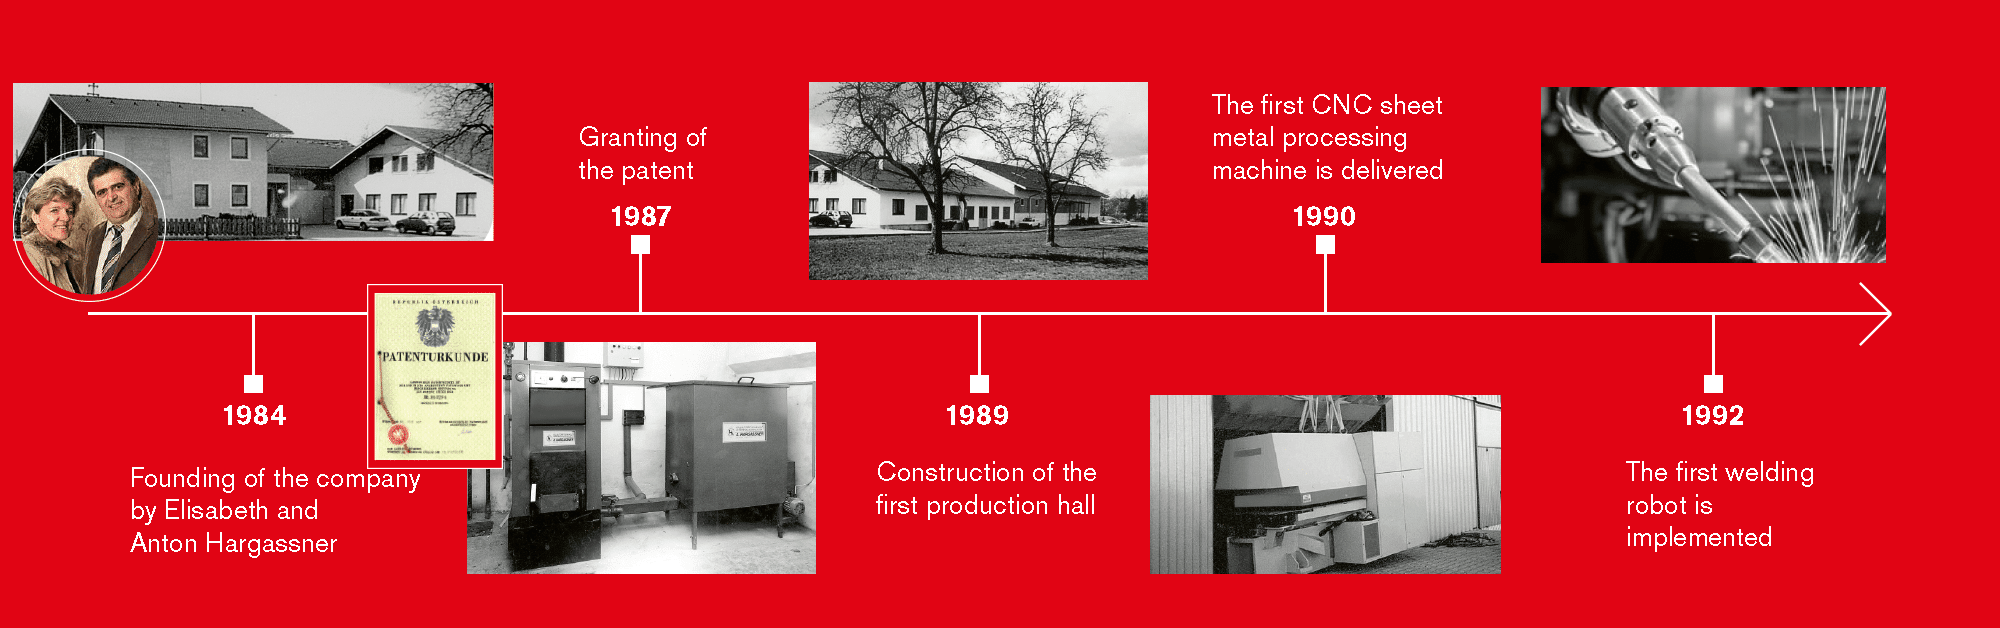 Hargassner's history timeline 1984-1992 | Hargassner